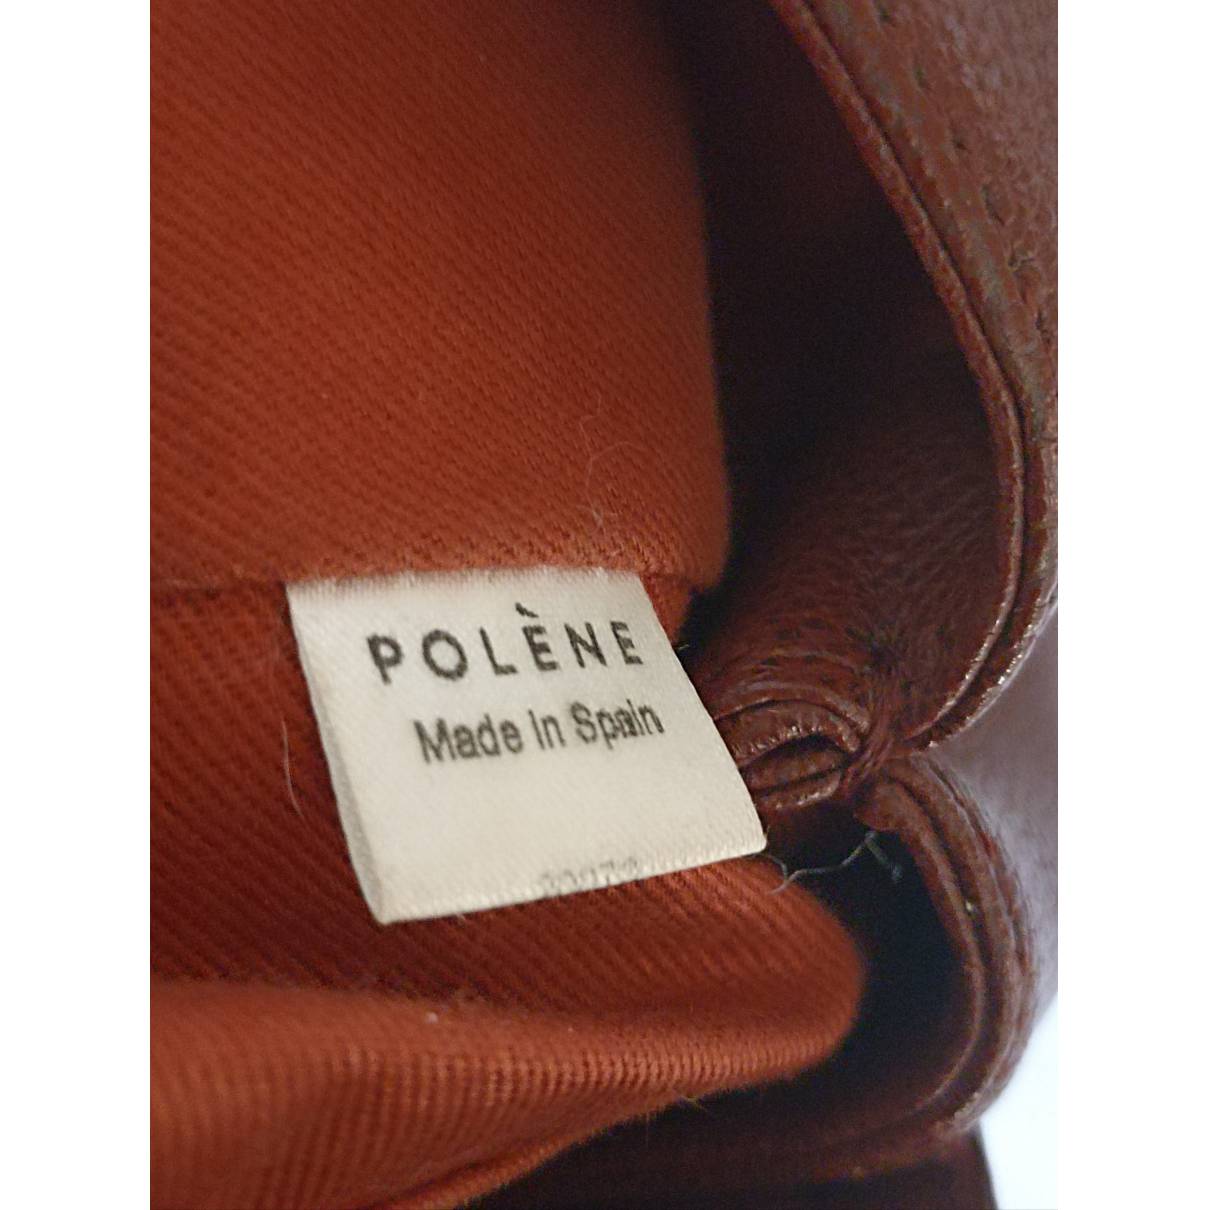 Numéro un nano leather handbag Polene Burgundy in Leather - 32424714